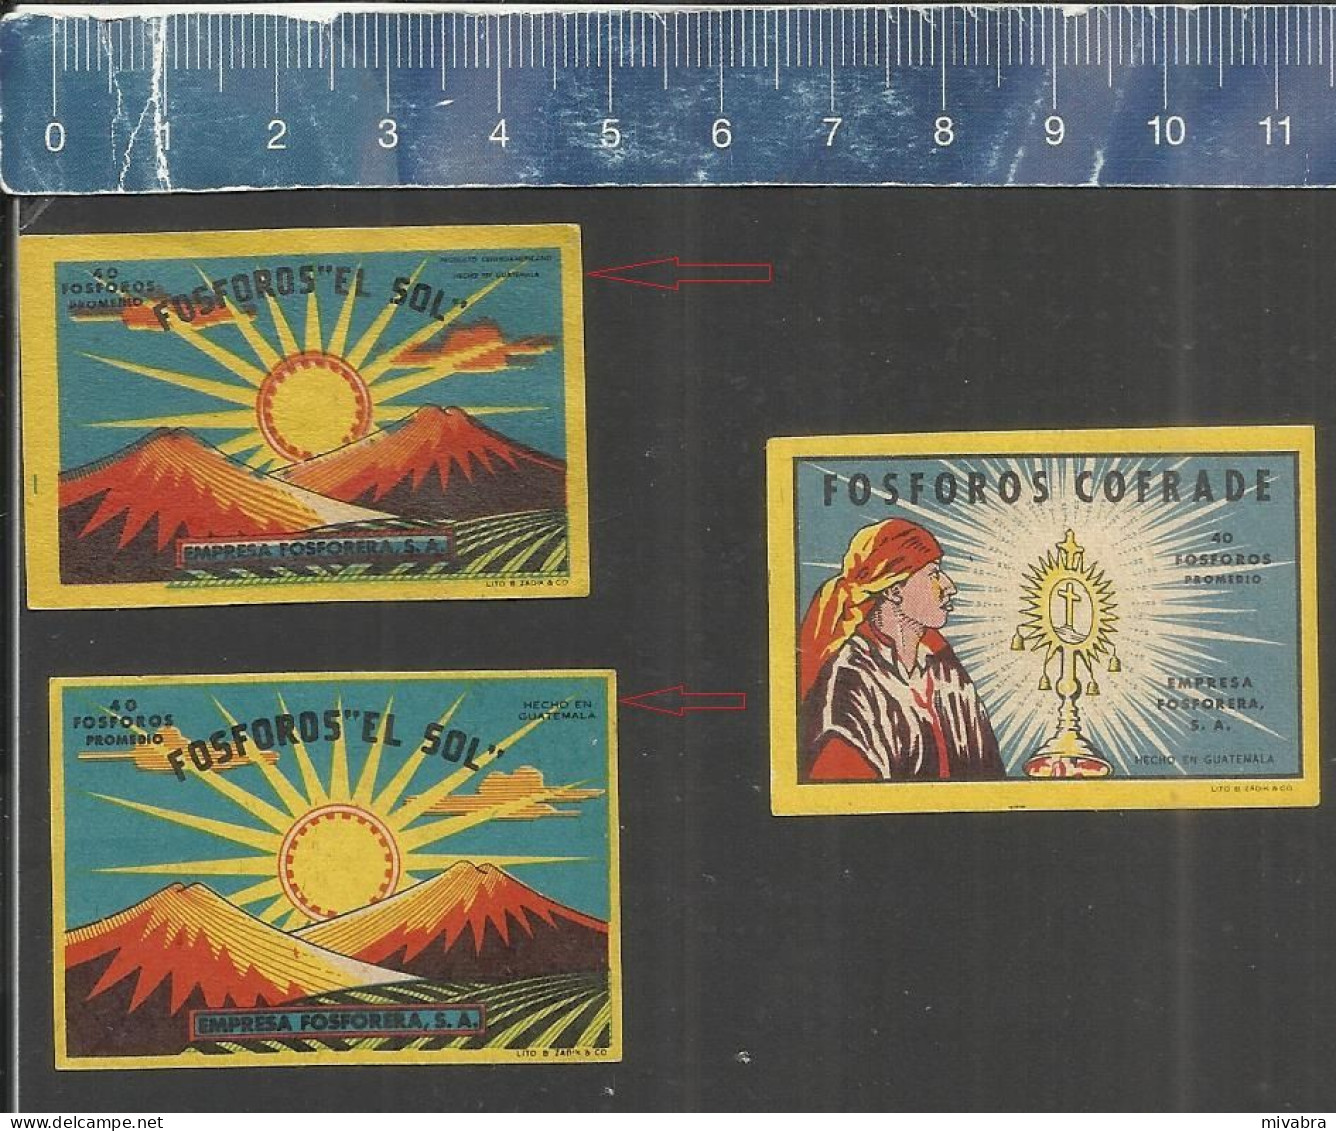 FOSFOROS EL SOL & COFRADE - OLD MATCHBOX LABELS MADE IN GUATEMALA - Cajas De Cerillas - Etiquetas